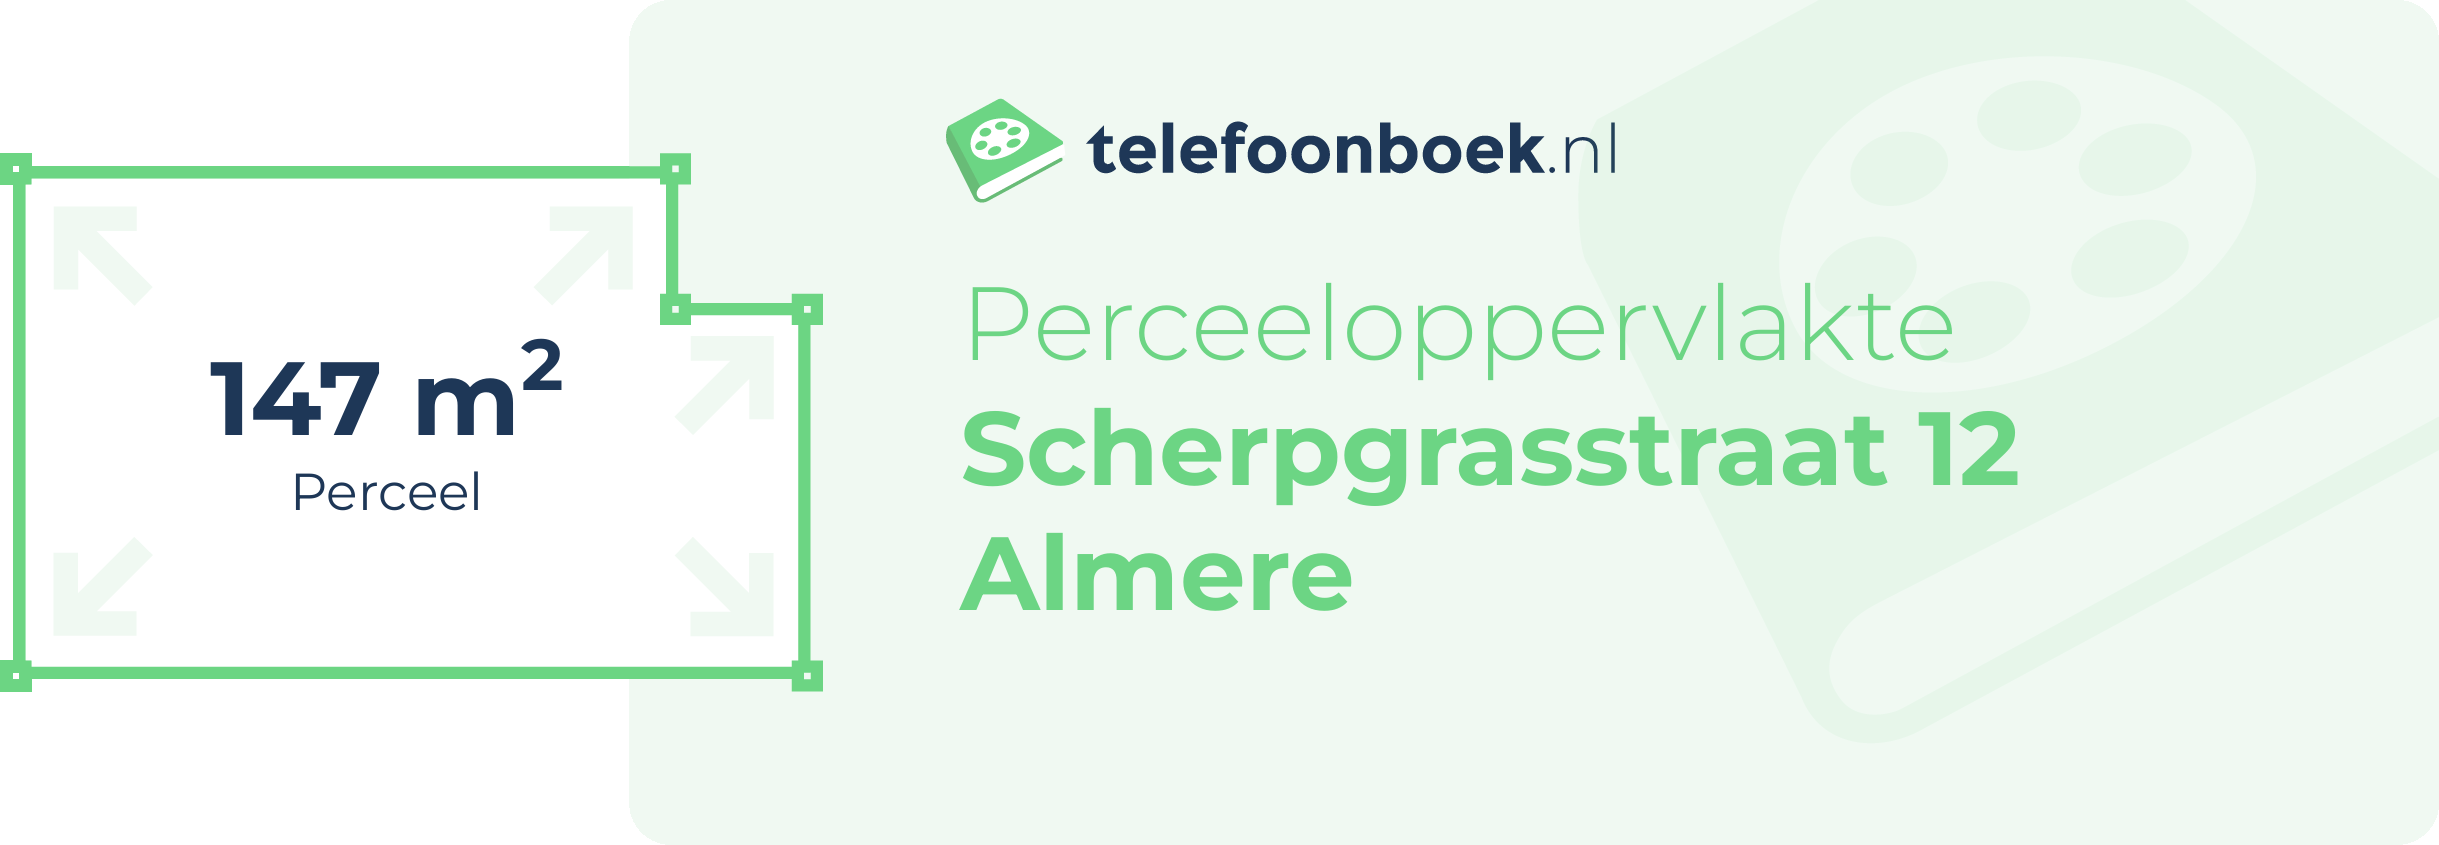 Perceeloppervlakte Scherpgrasstraat 12 Almere